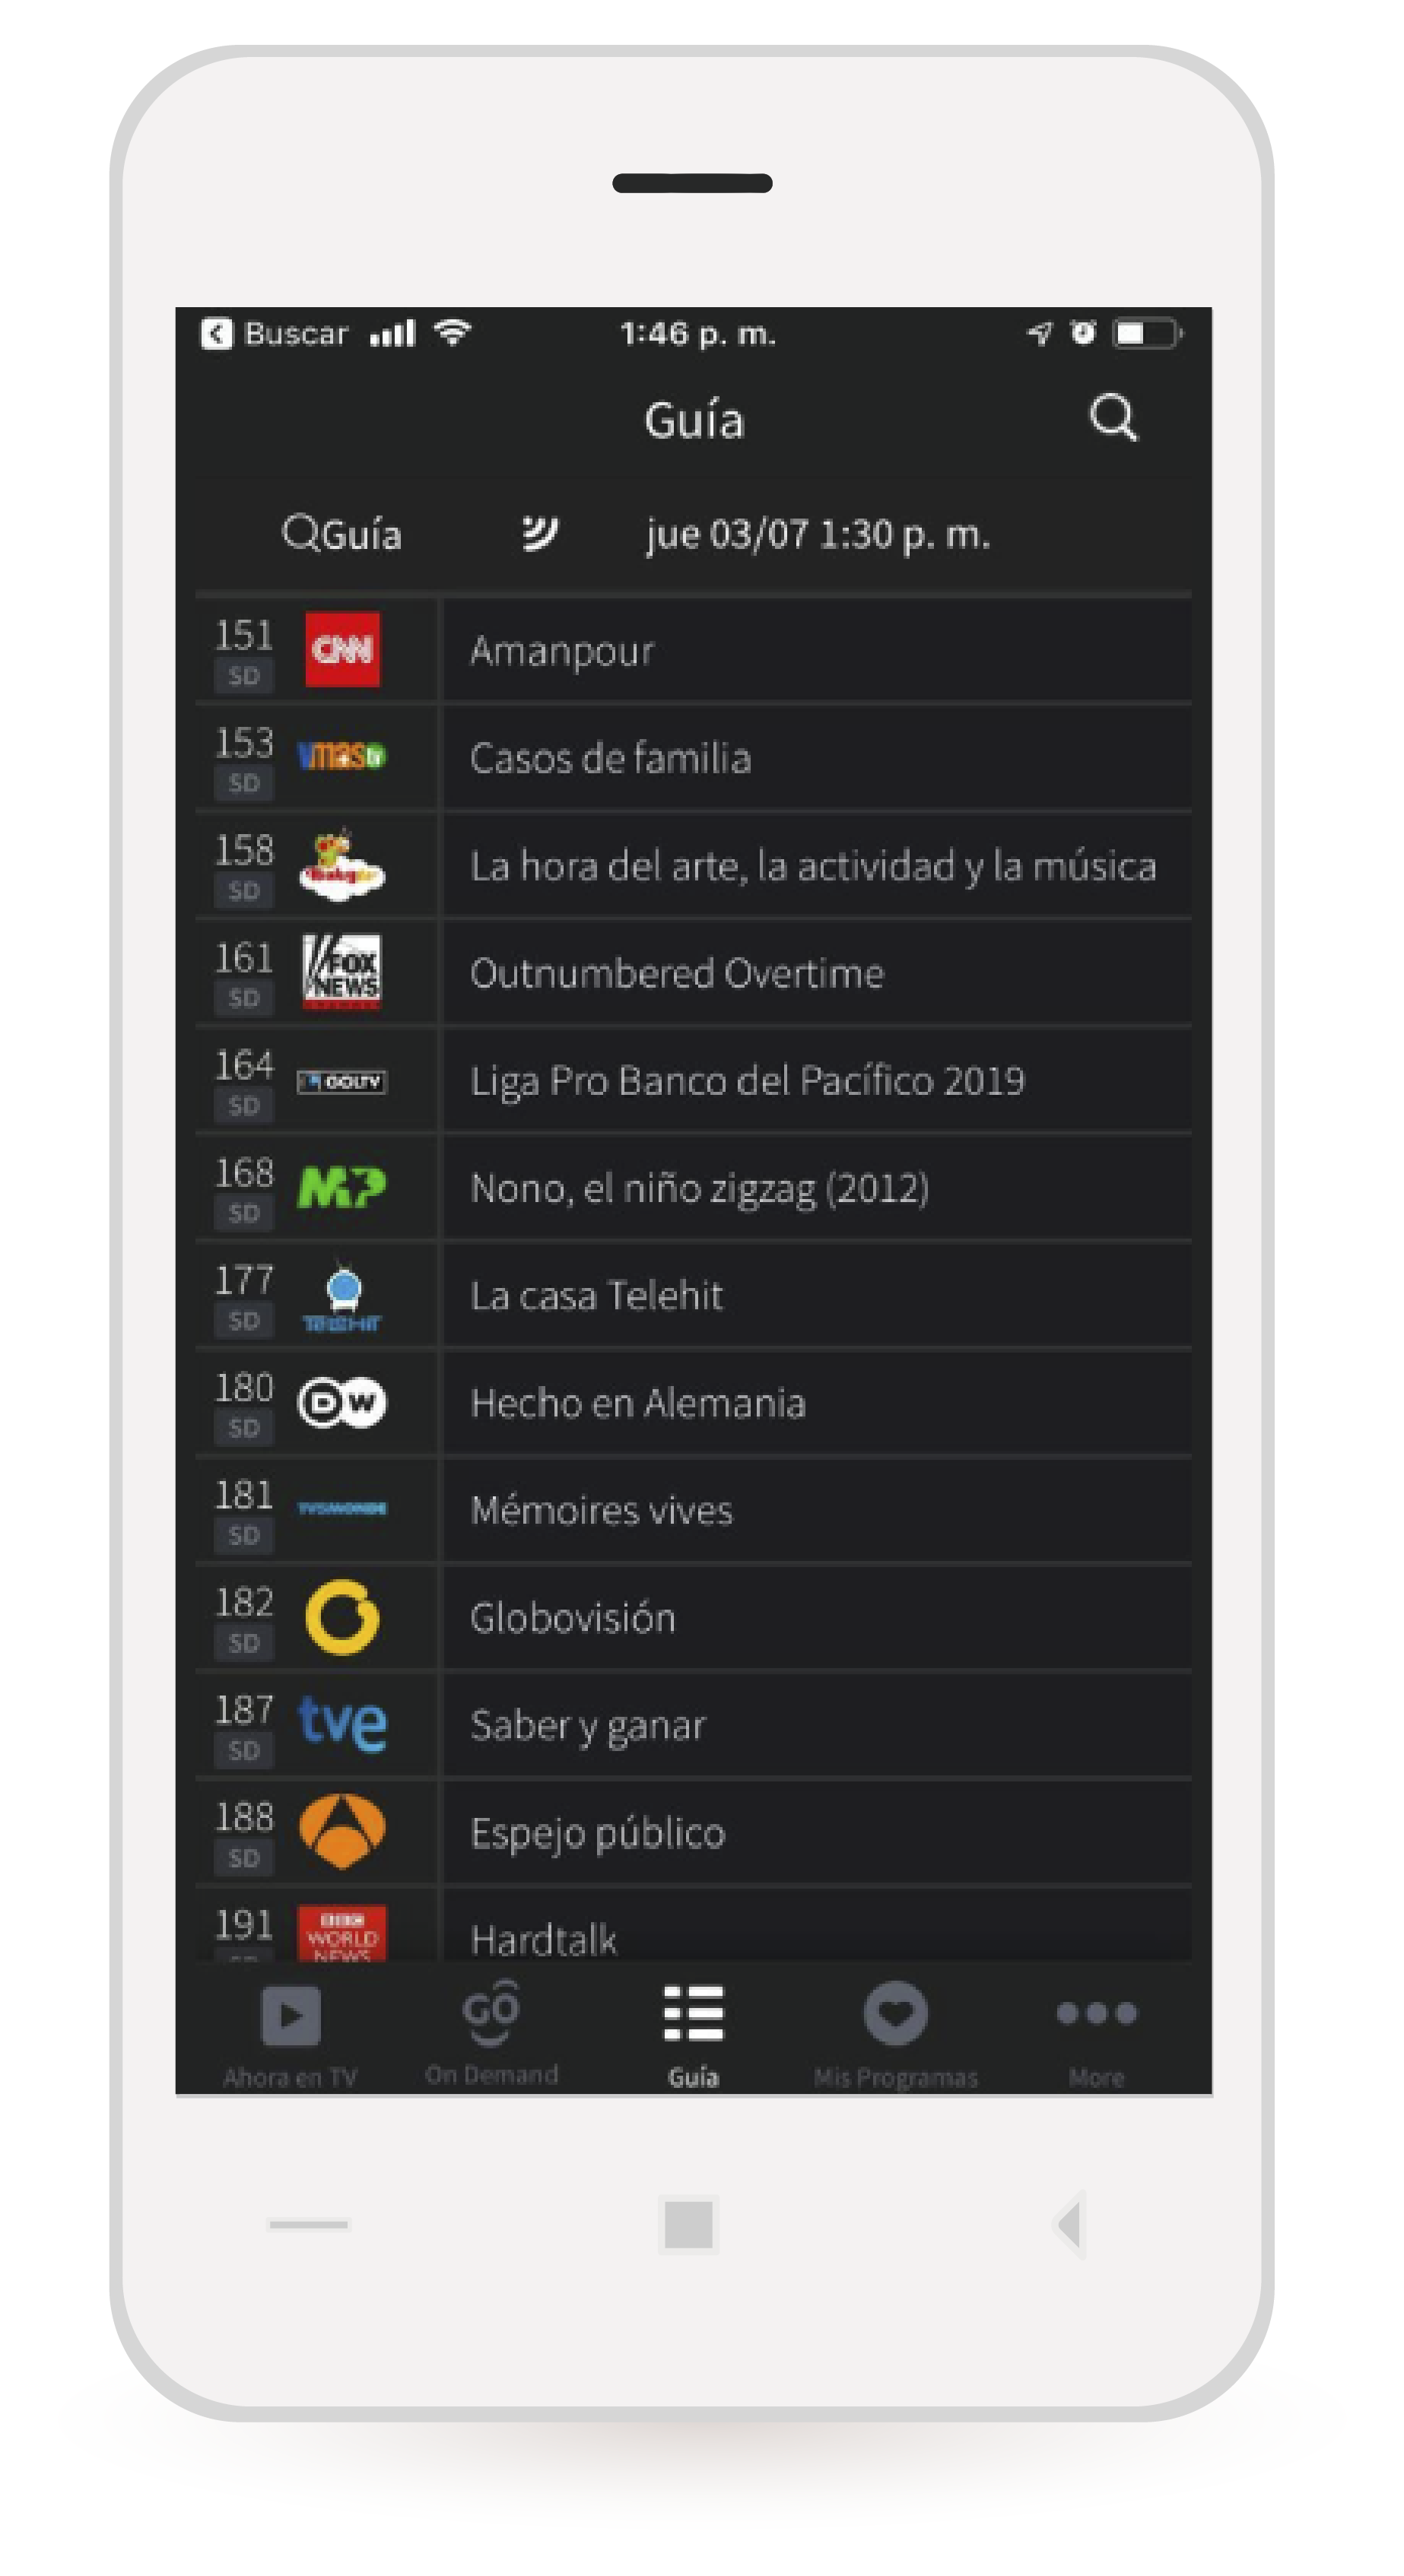 aw-Tigo One Tv iOS Paso 2 Programa actual